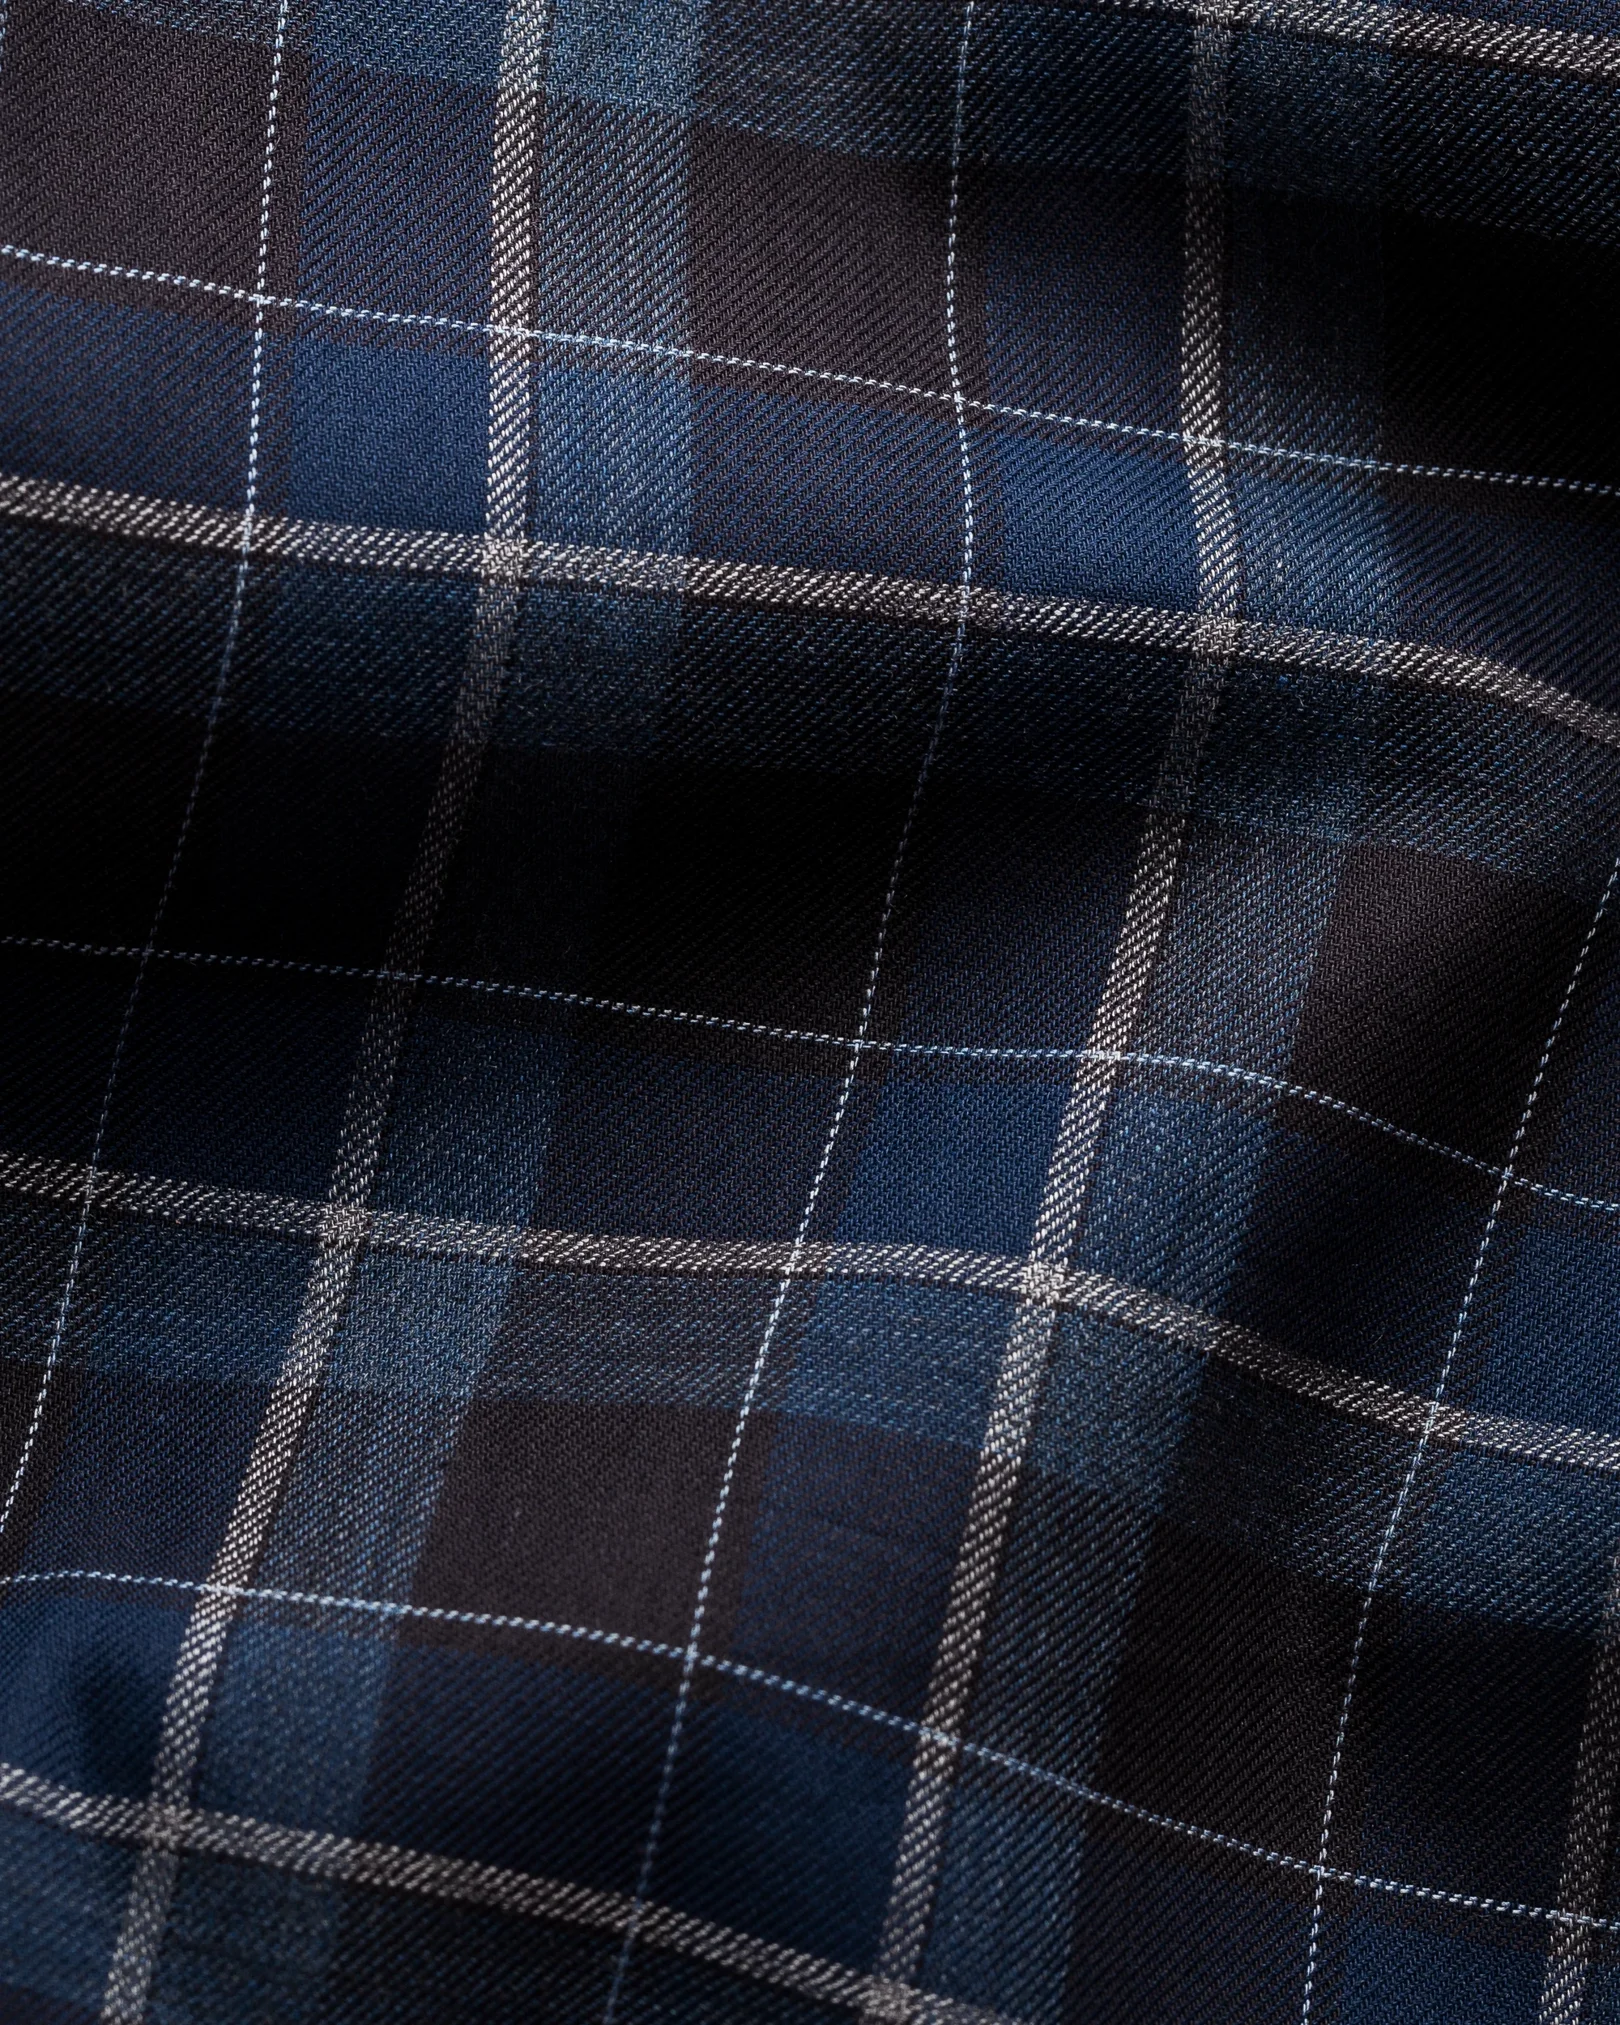 Eton - navy blue flannel